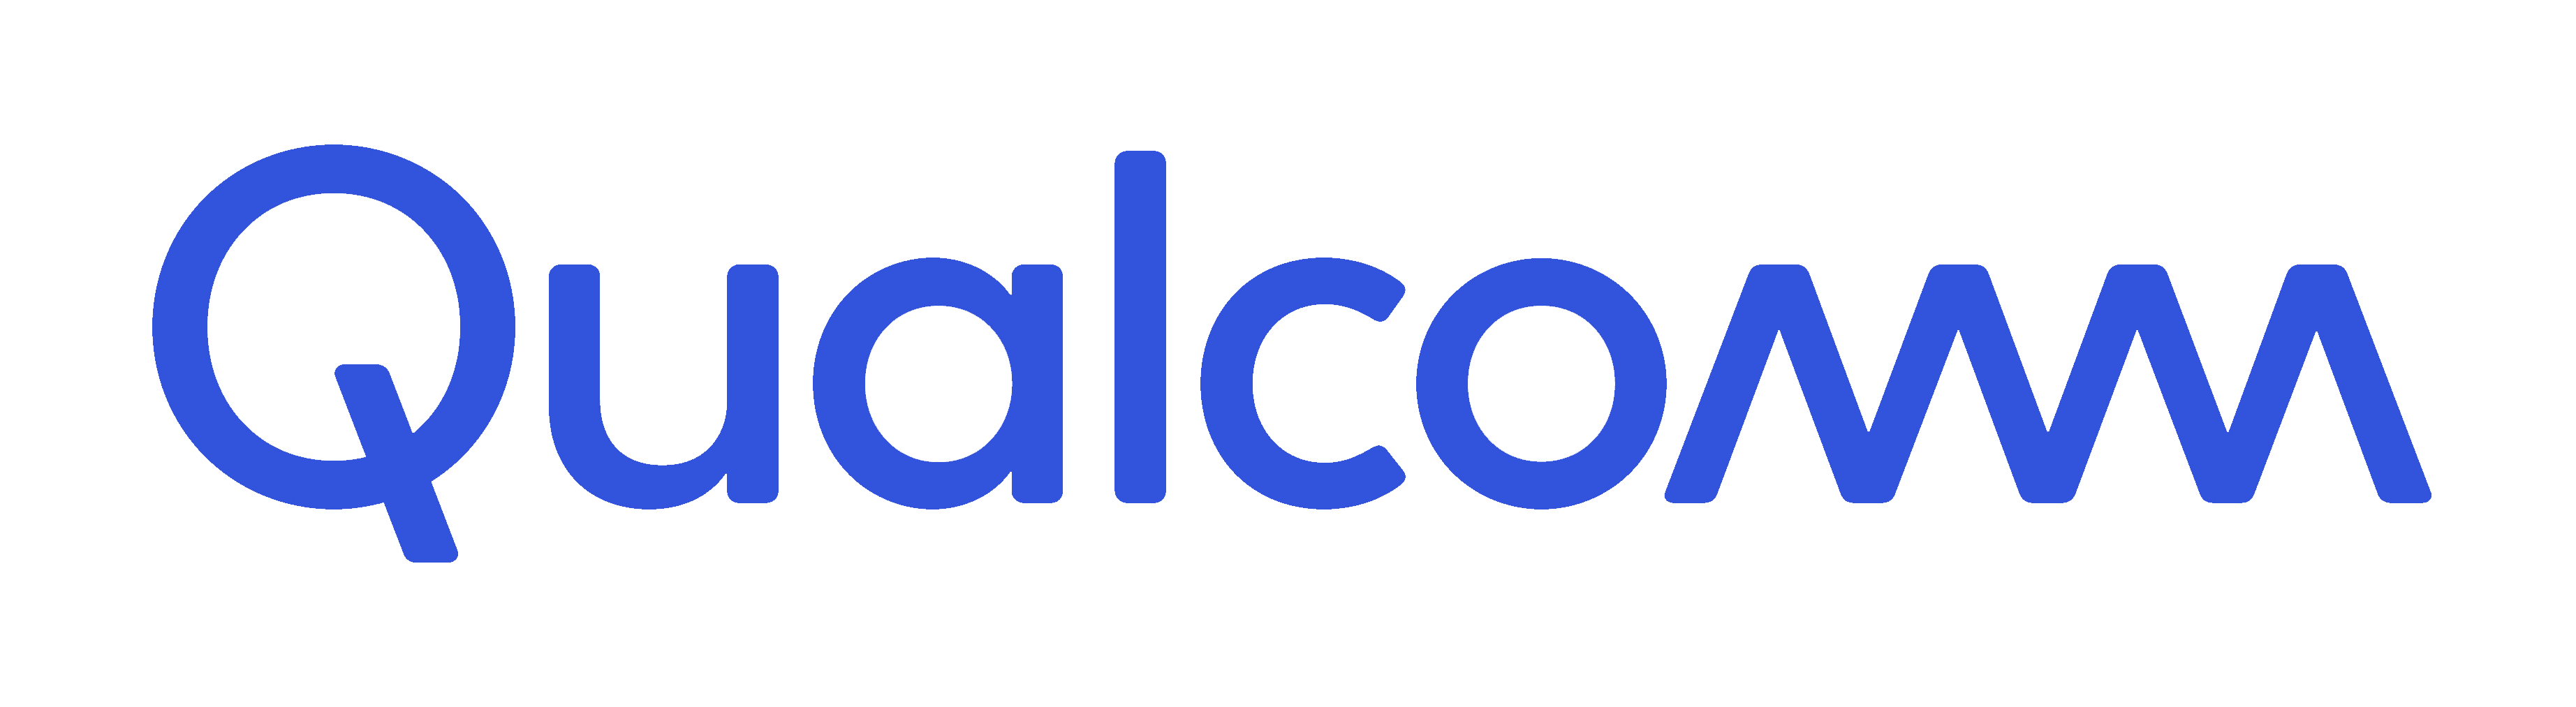 Sponsor logo - Qualcomm